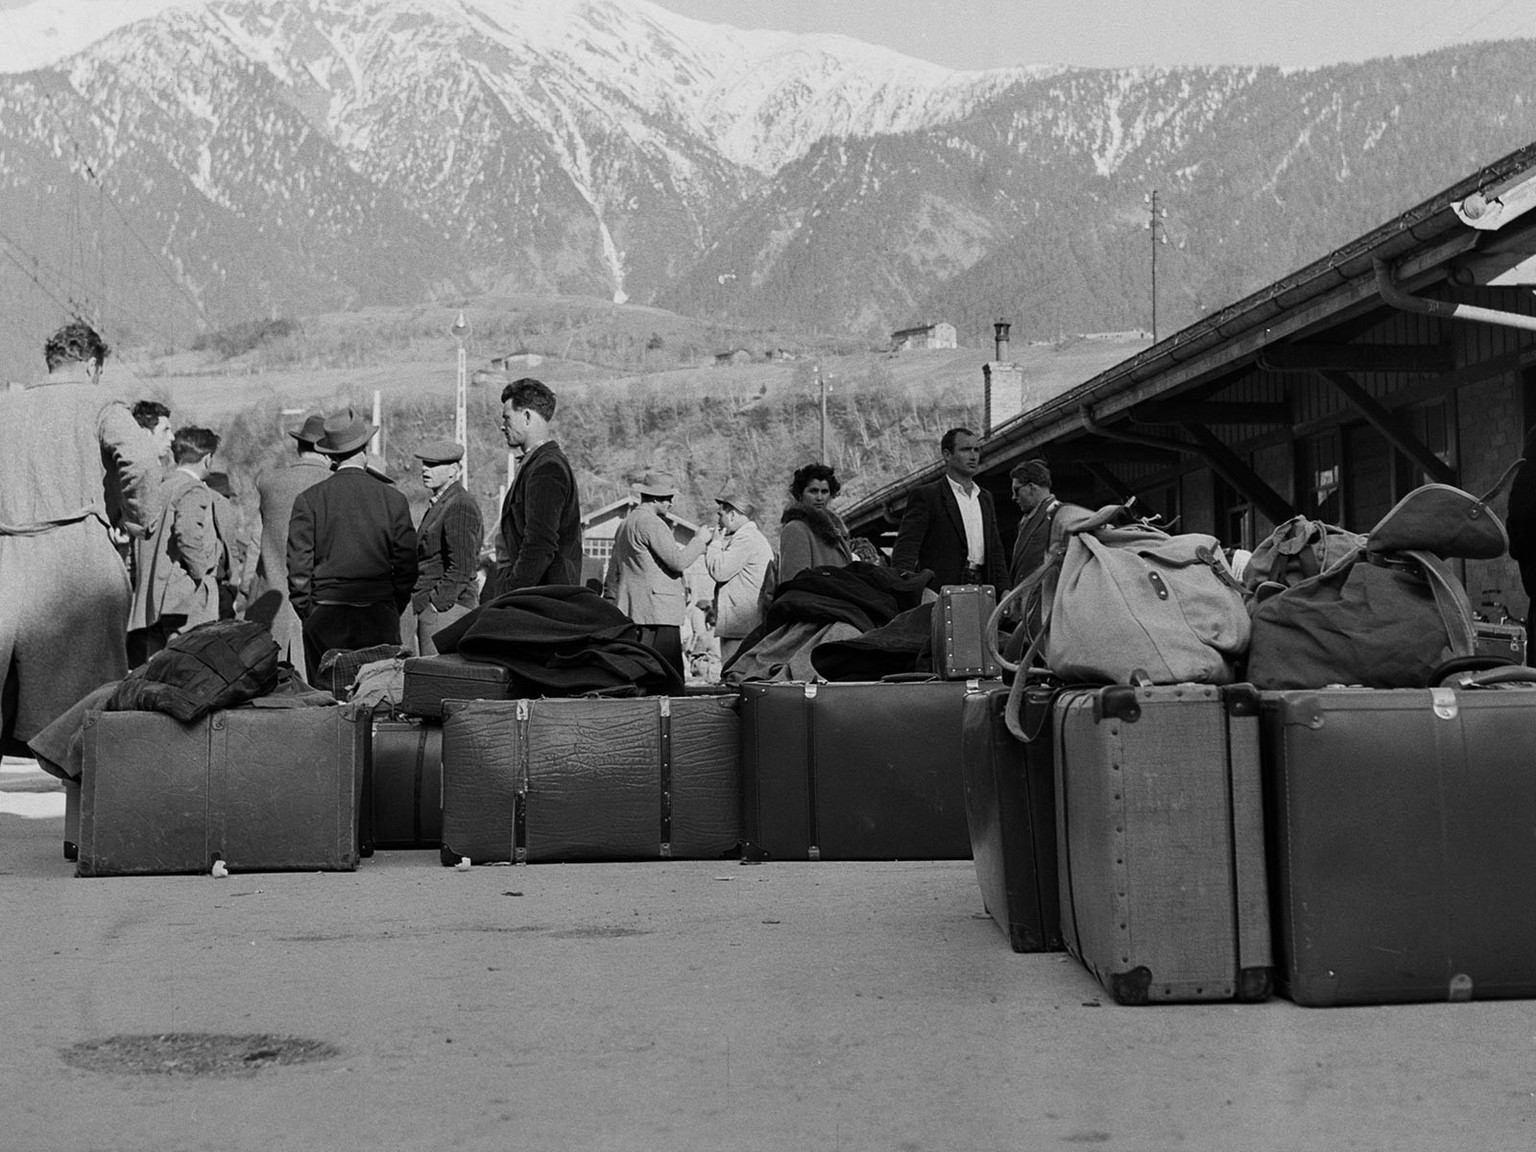 Arrivée de travailleurs italiens en 1956 à Brigue. 
https://permalink.nationalmuseum.ch/100644347